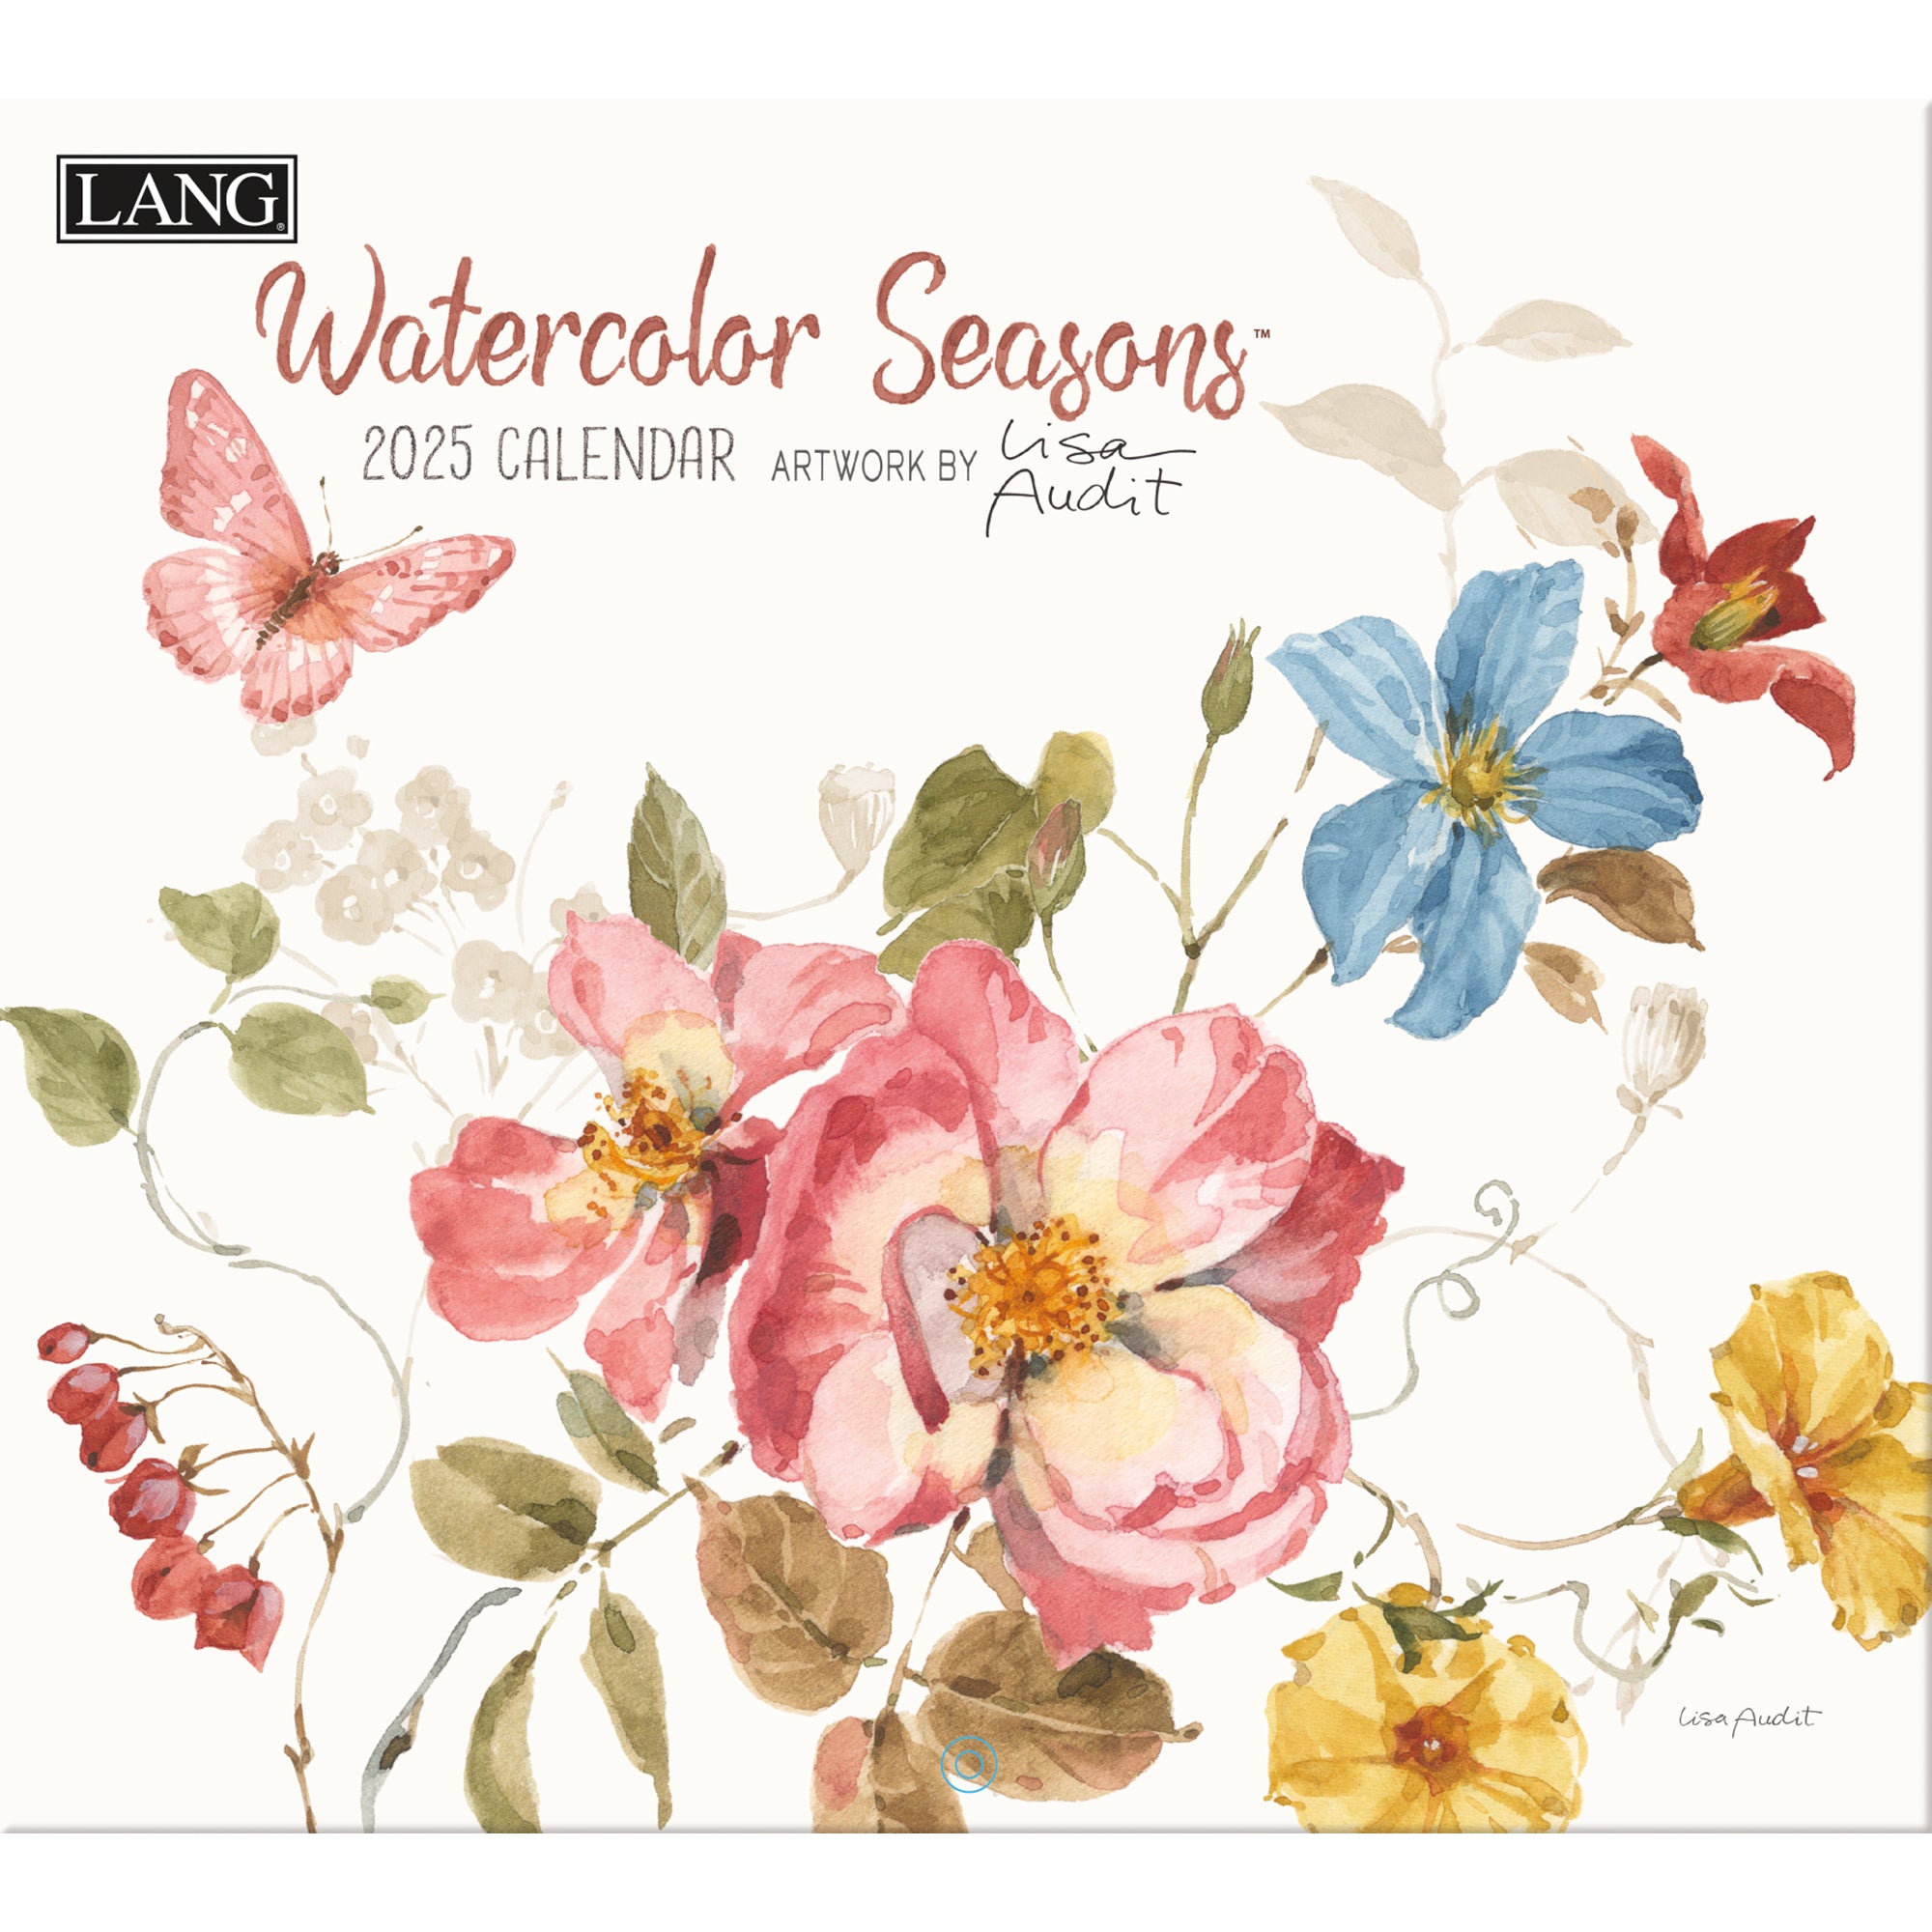 2025 Watercolor Seasons by Lisa Audit - LANG Deluxe Wall Calendar